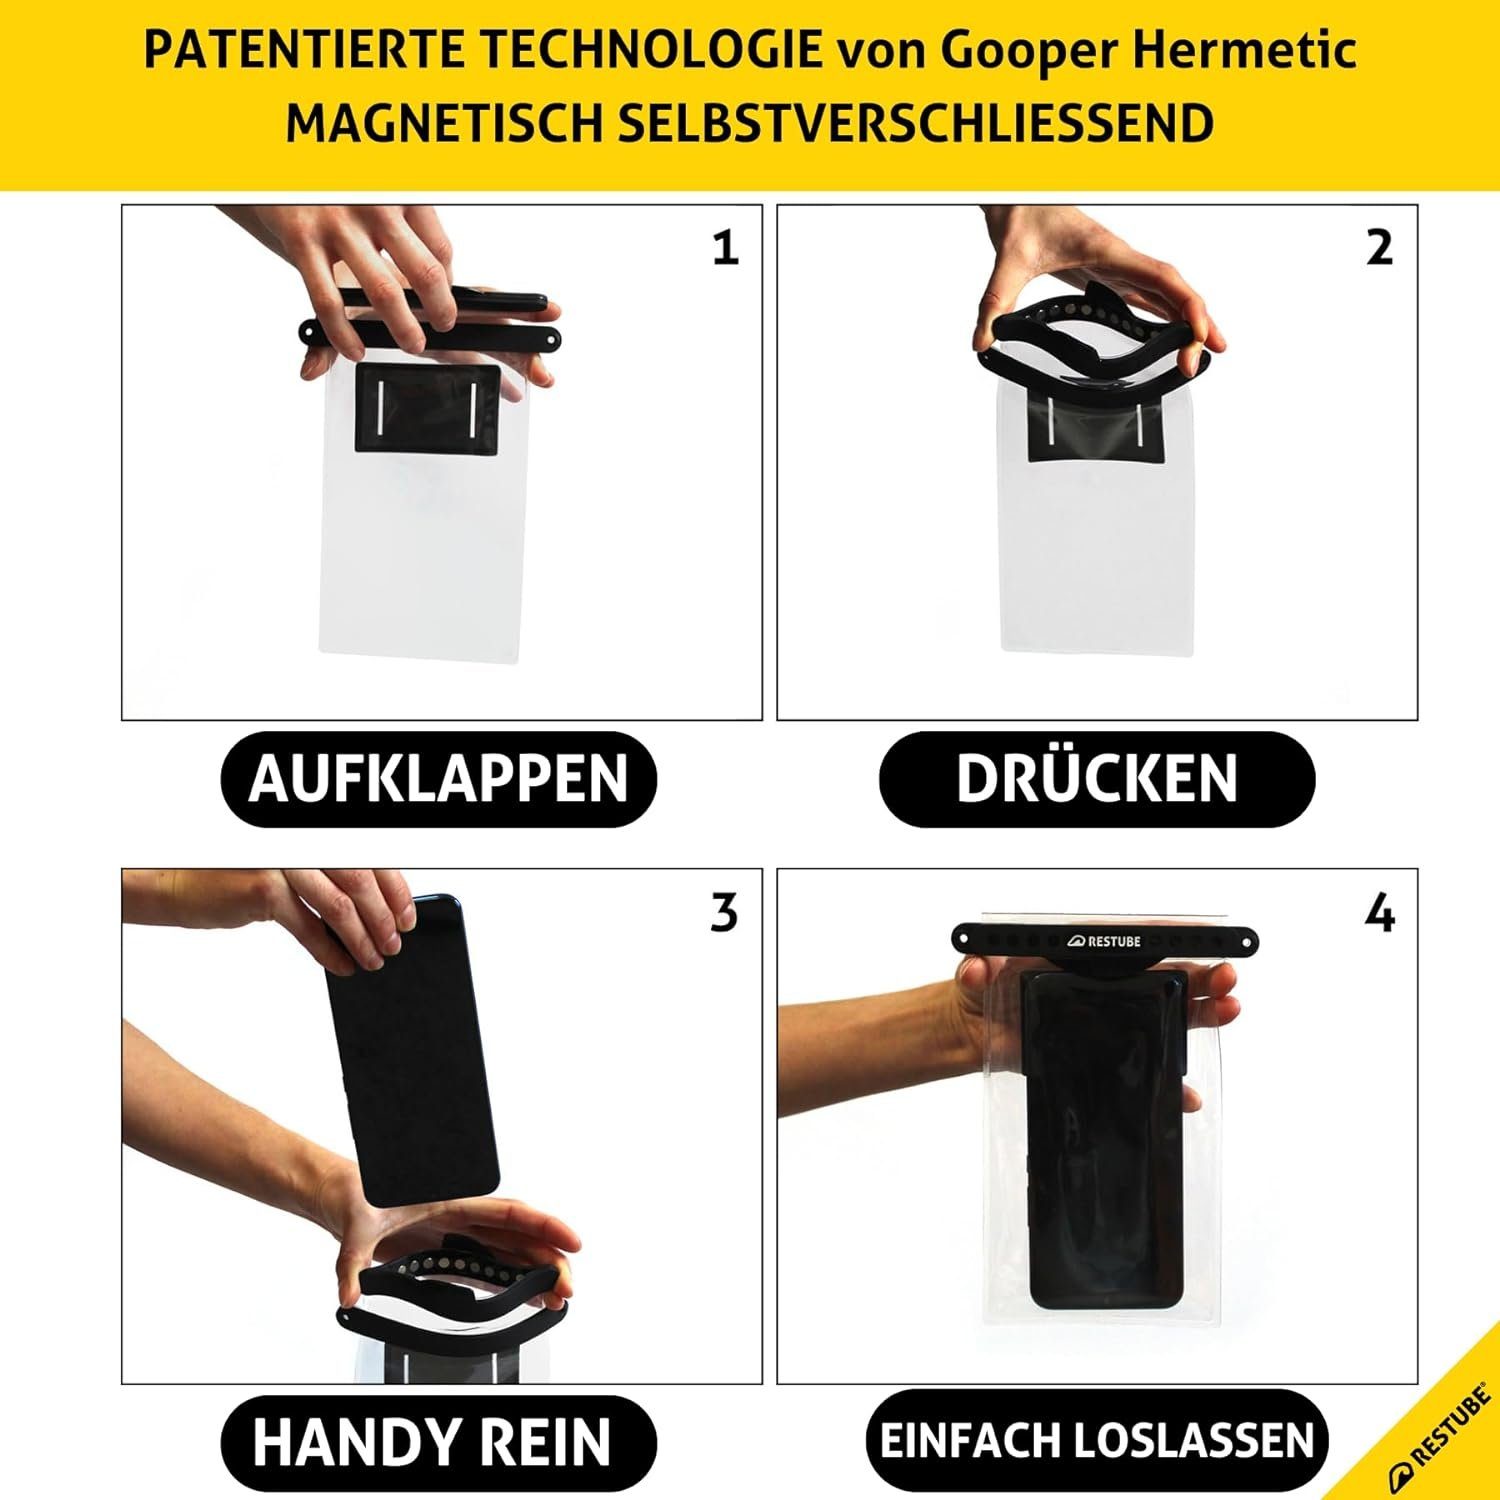 Handytasche & Restube Magnetisch Wasserdichte Fidlock, by RESTUBE Smartphone-Hülle schließend